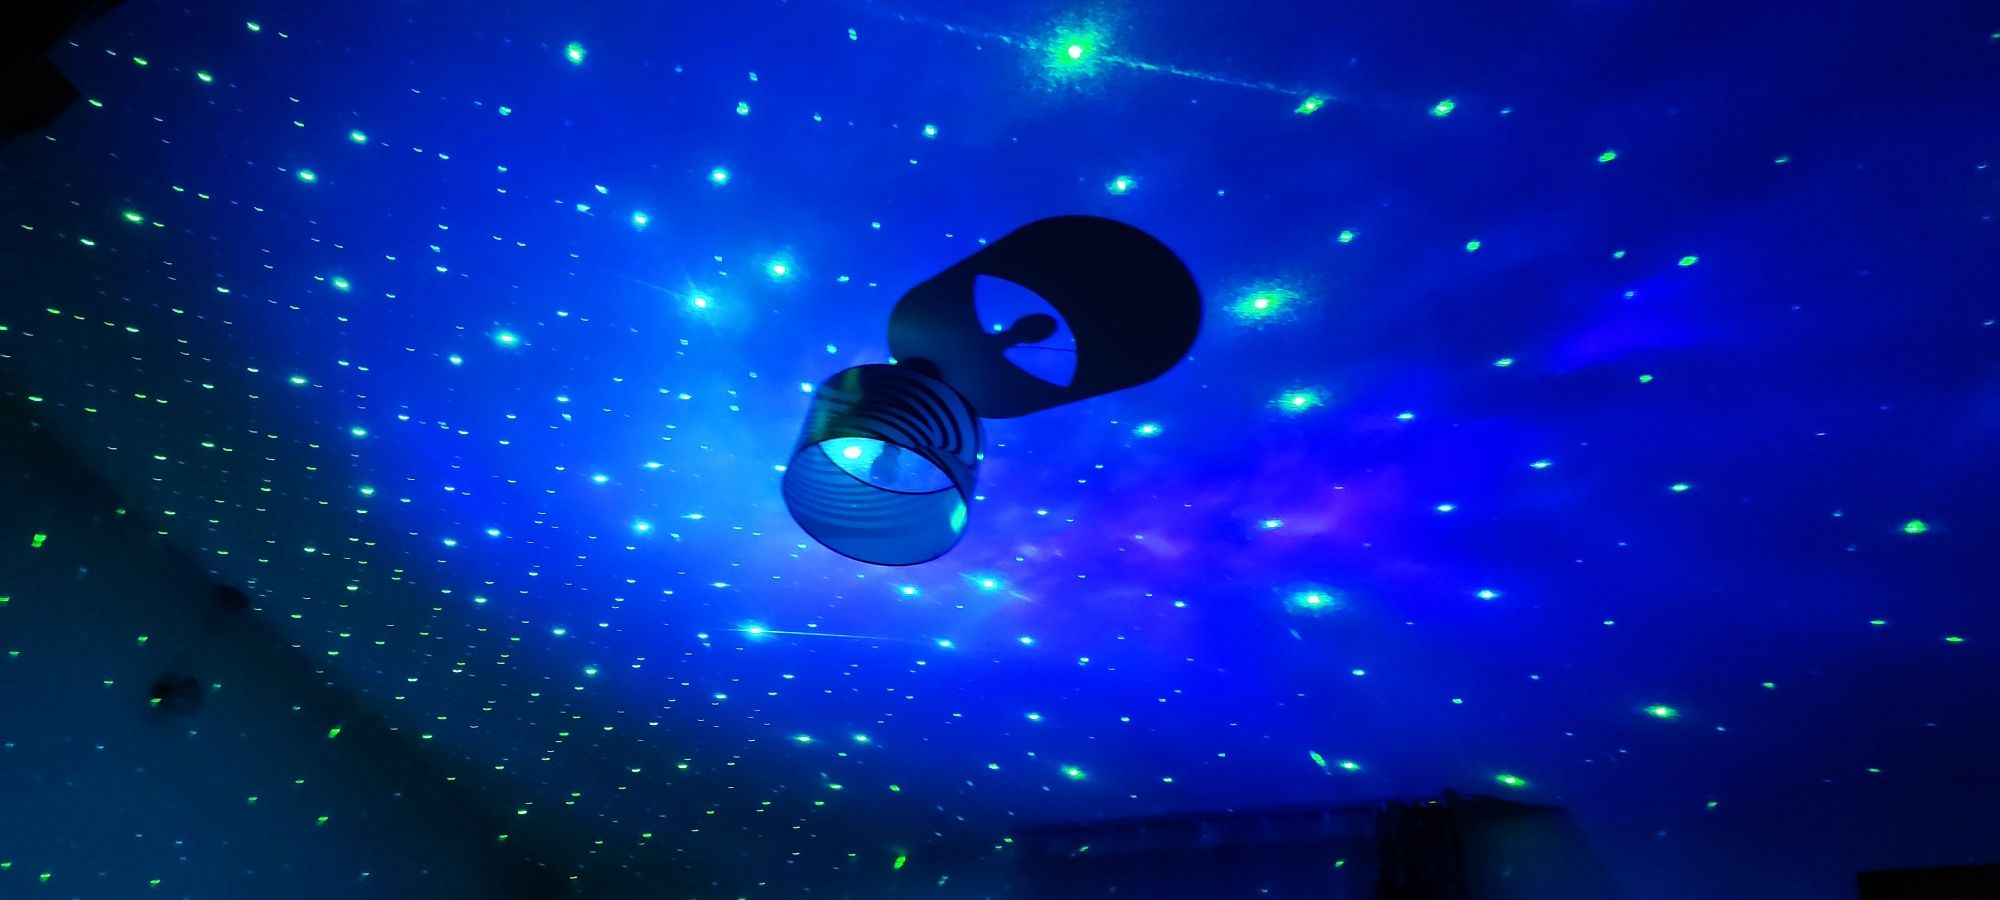 Projektor LED astronauta gwieździste niebo czarny Nowy